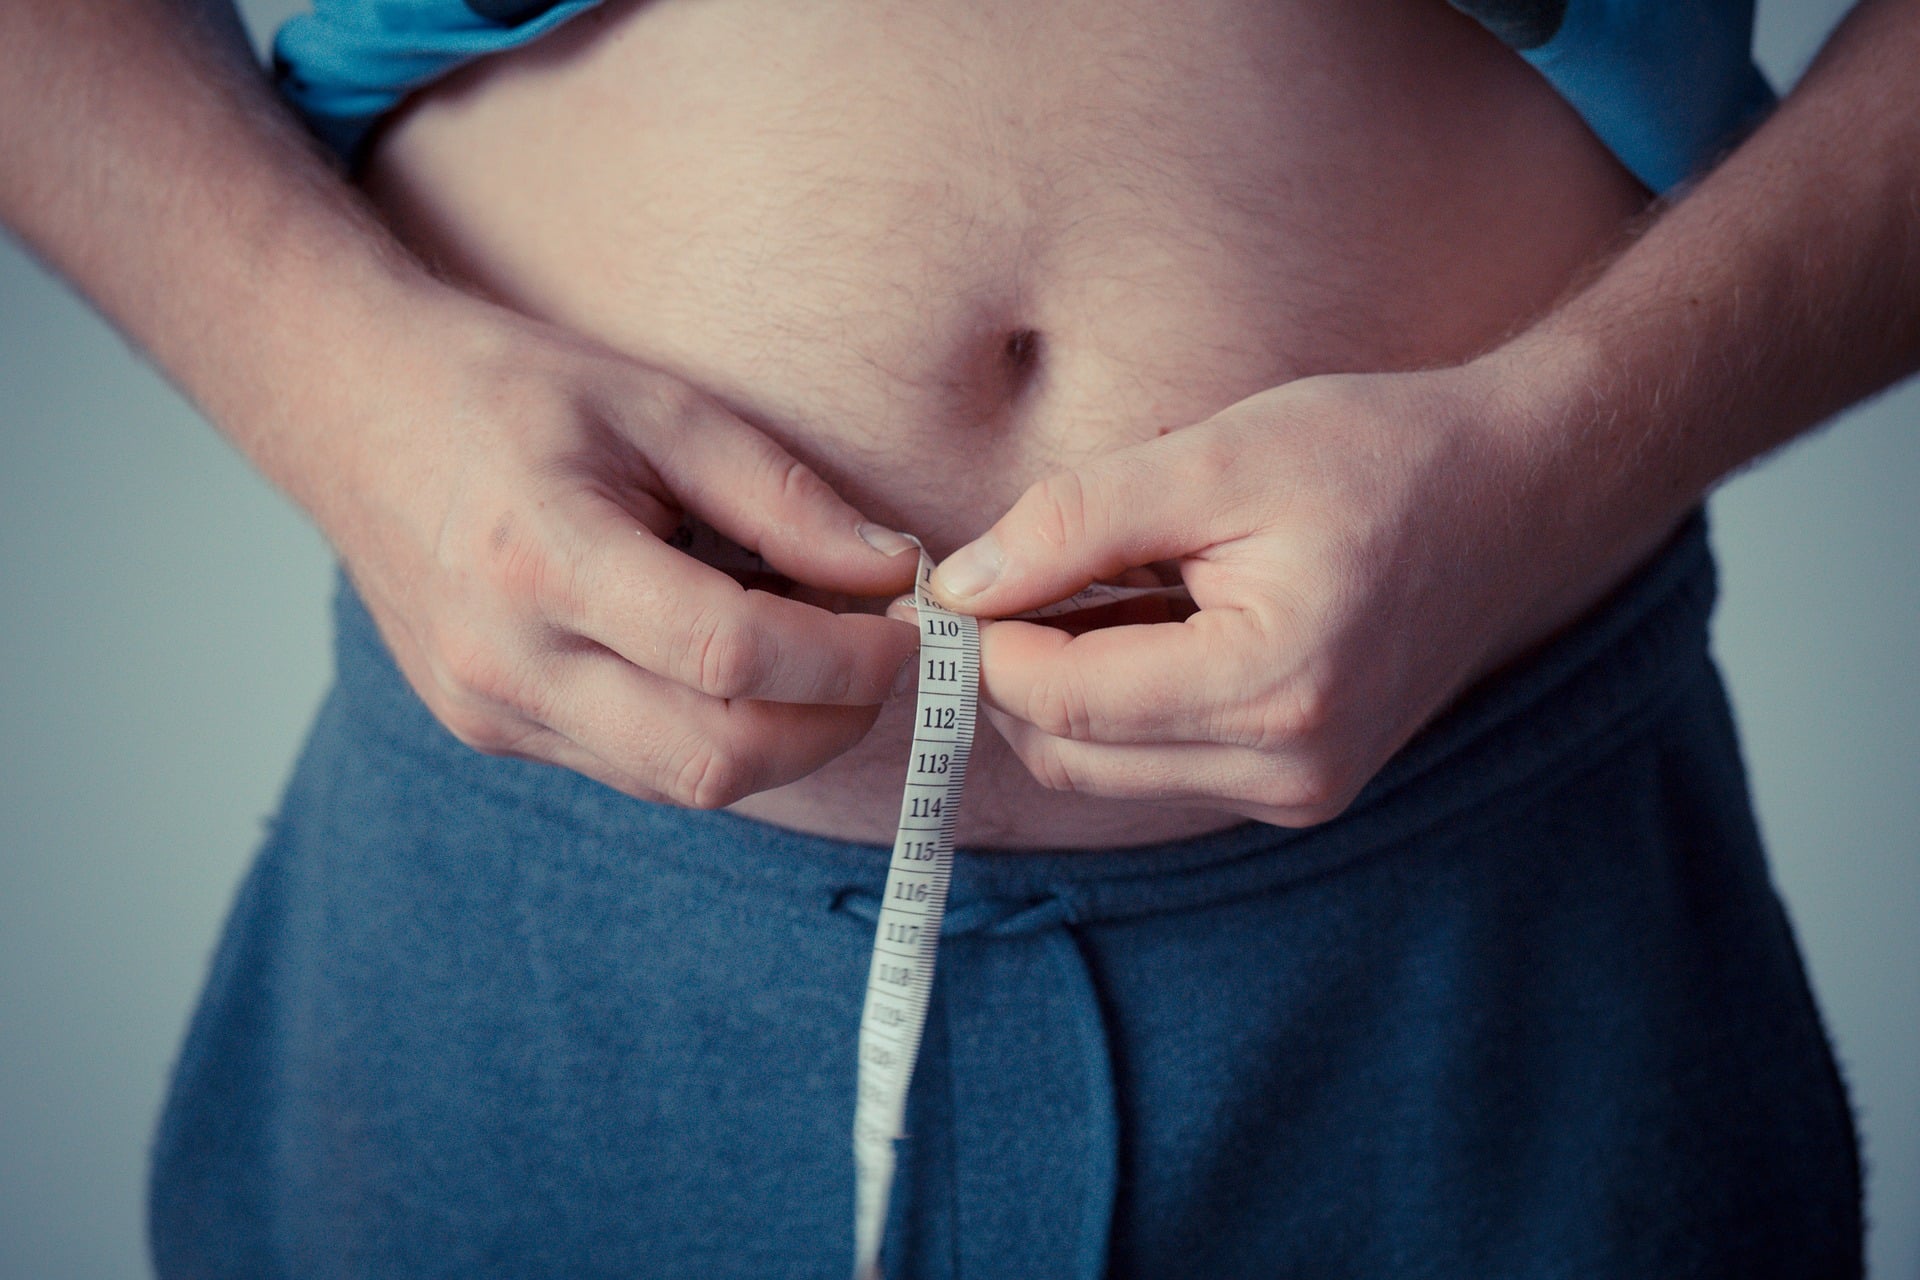 Tener grasa parda protege contra las enfermedades metabólicas